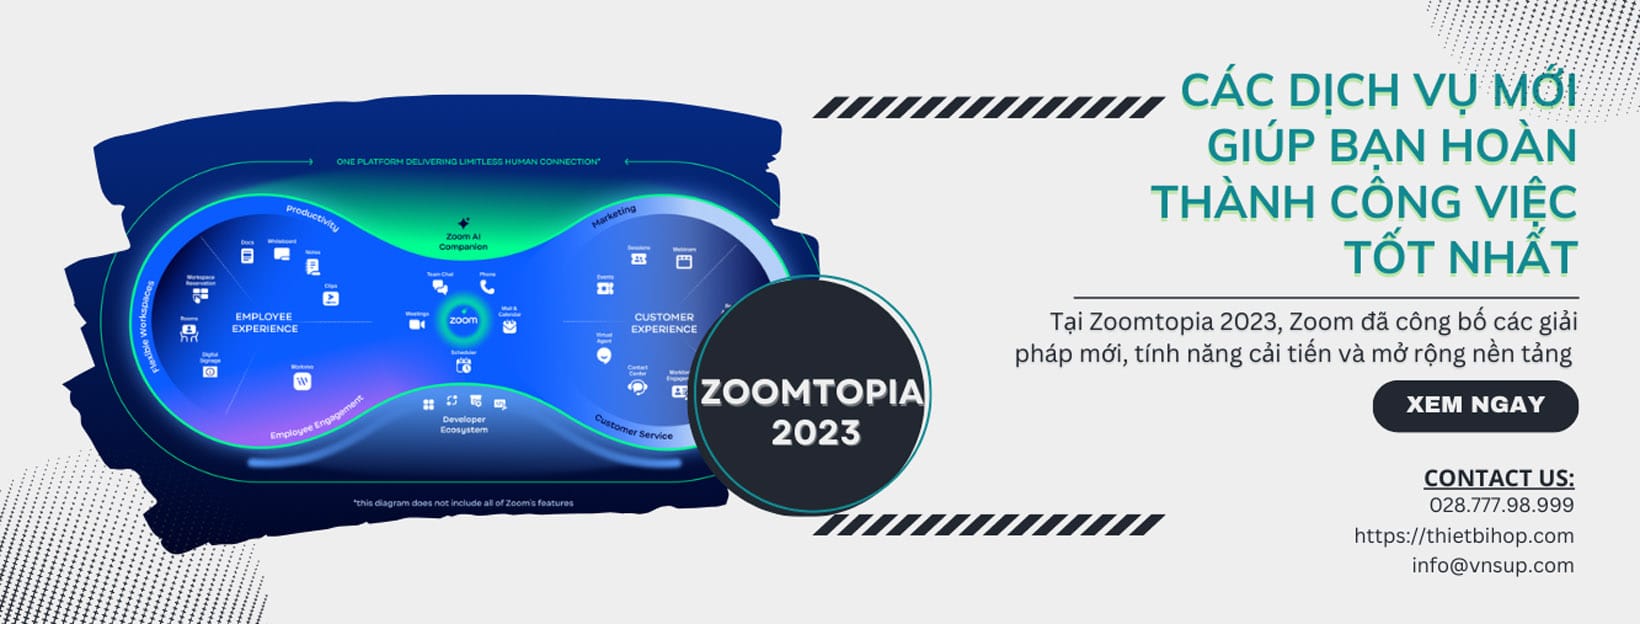 zoomtopia 2023 và các dịch vụ mới